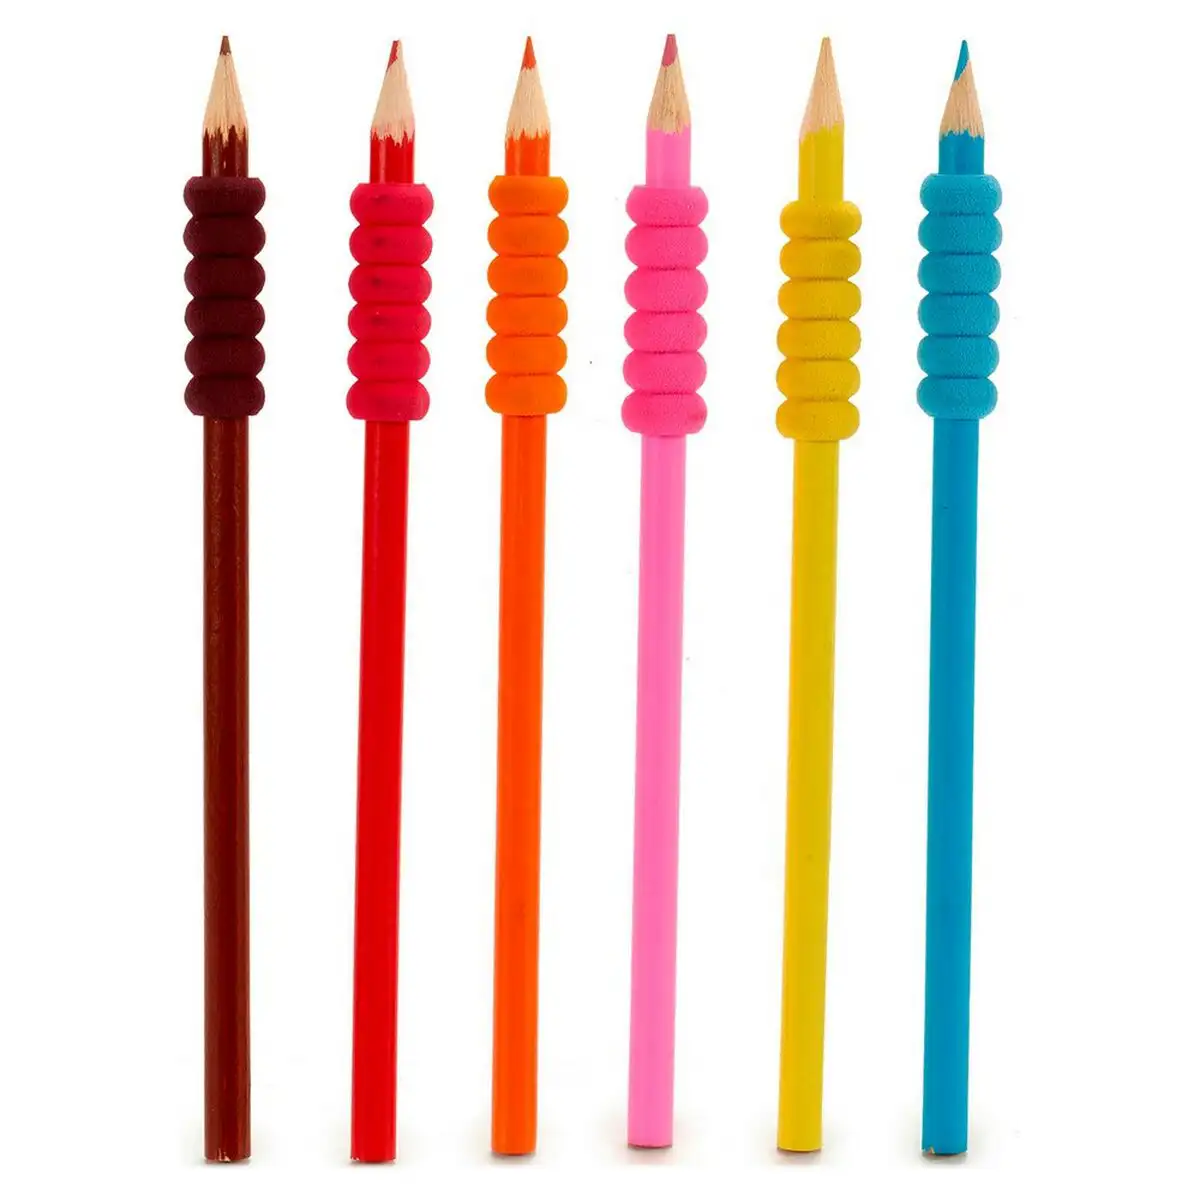 Crayons de couleur big s3601123_2722. DIAYTAR SENEGAL - Là où Chaque Produit Est une Trouvaille. Explorez notre sélection minutieuse et découvrez des articles qui correspondent à votre style de vie et à vos aspirations.